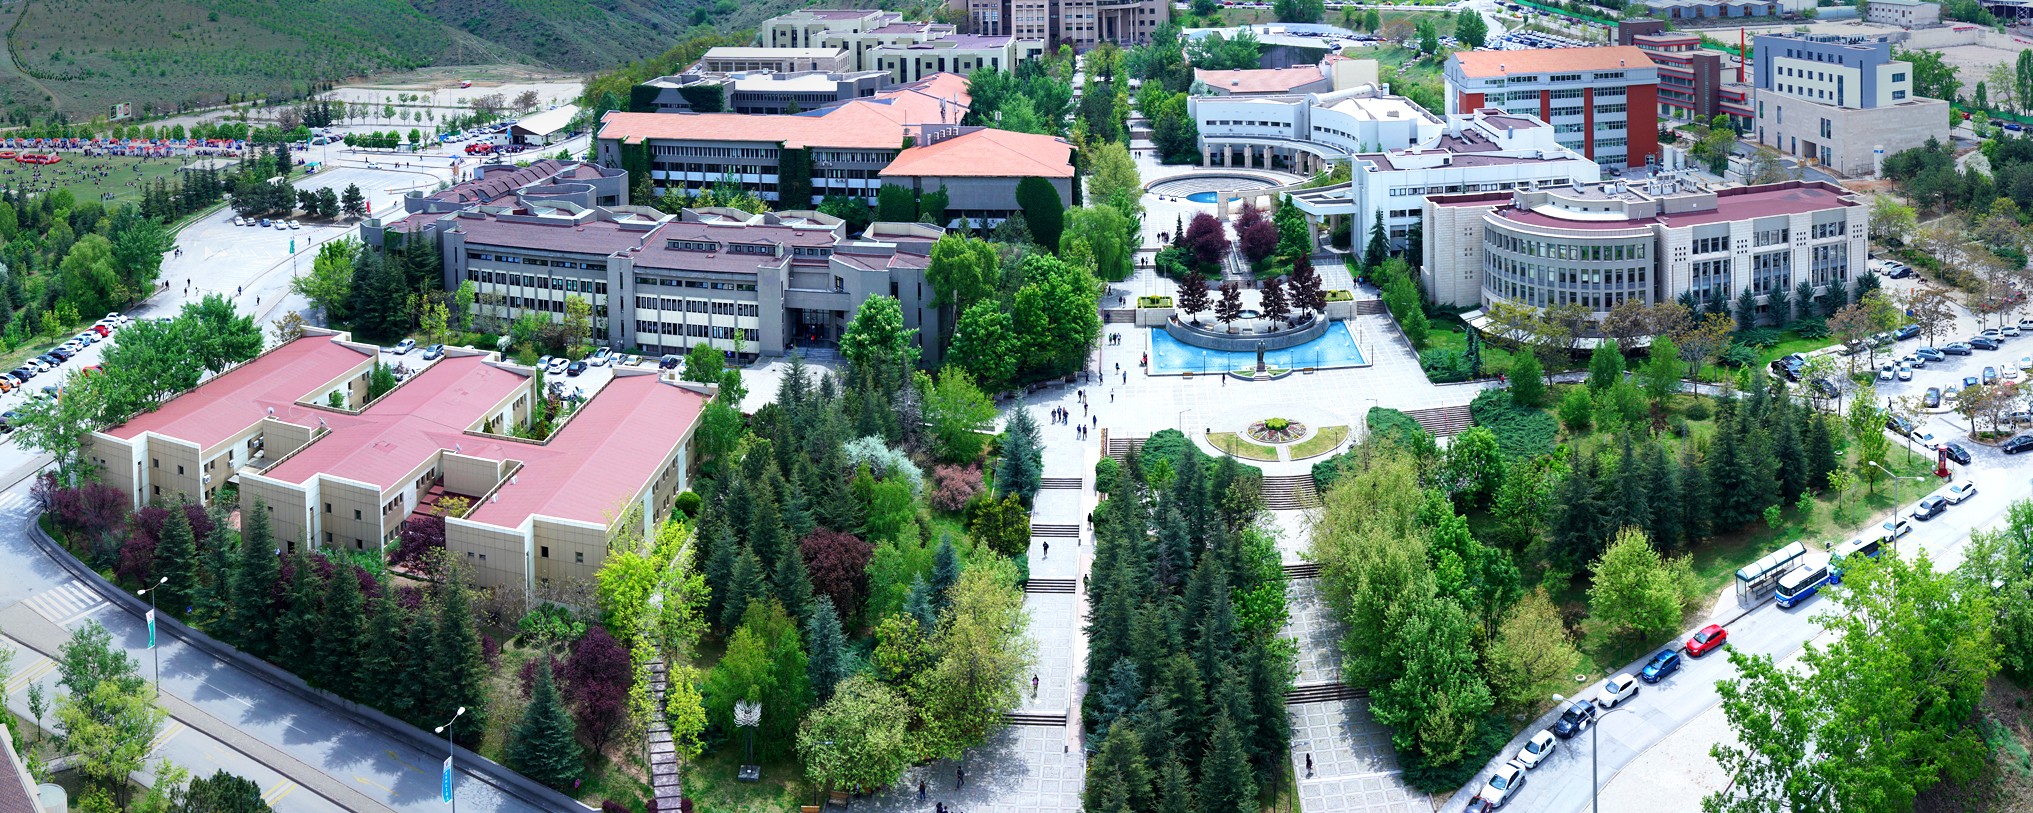 Bilkent Üniversitesi